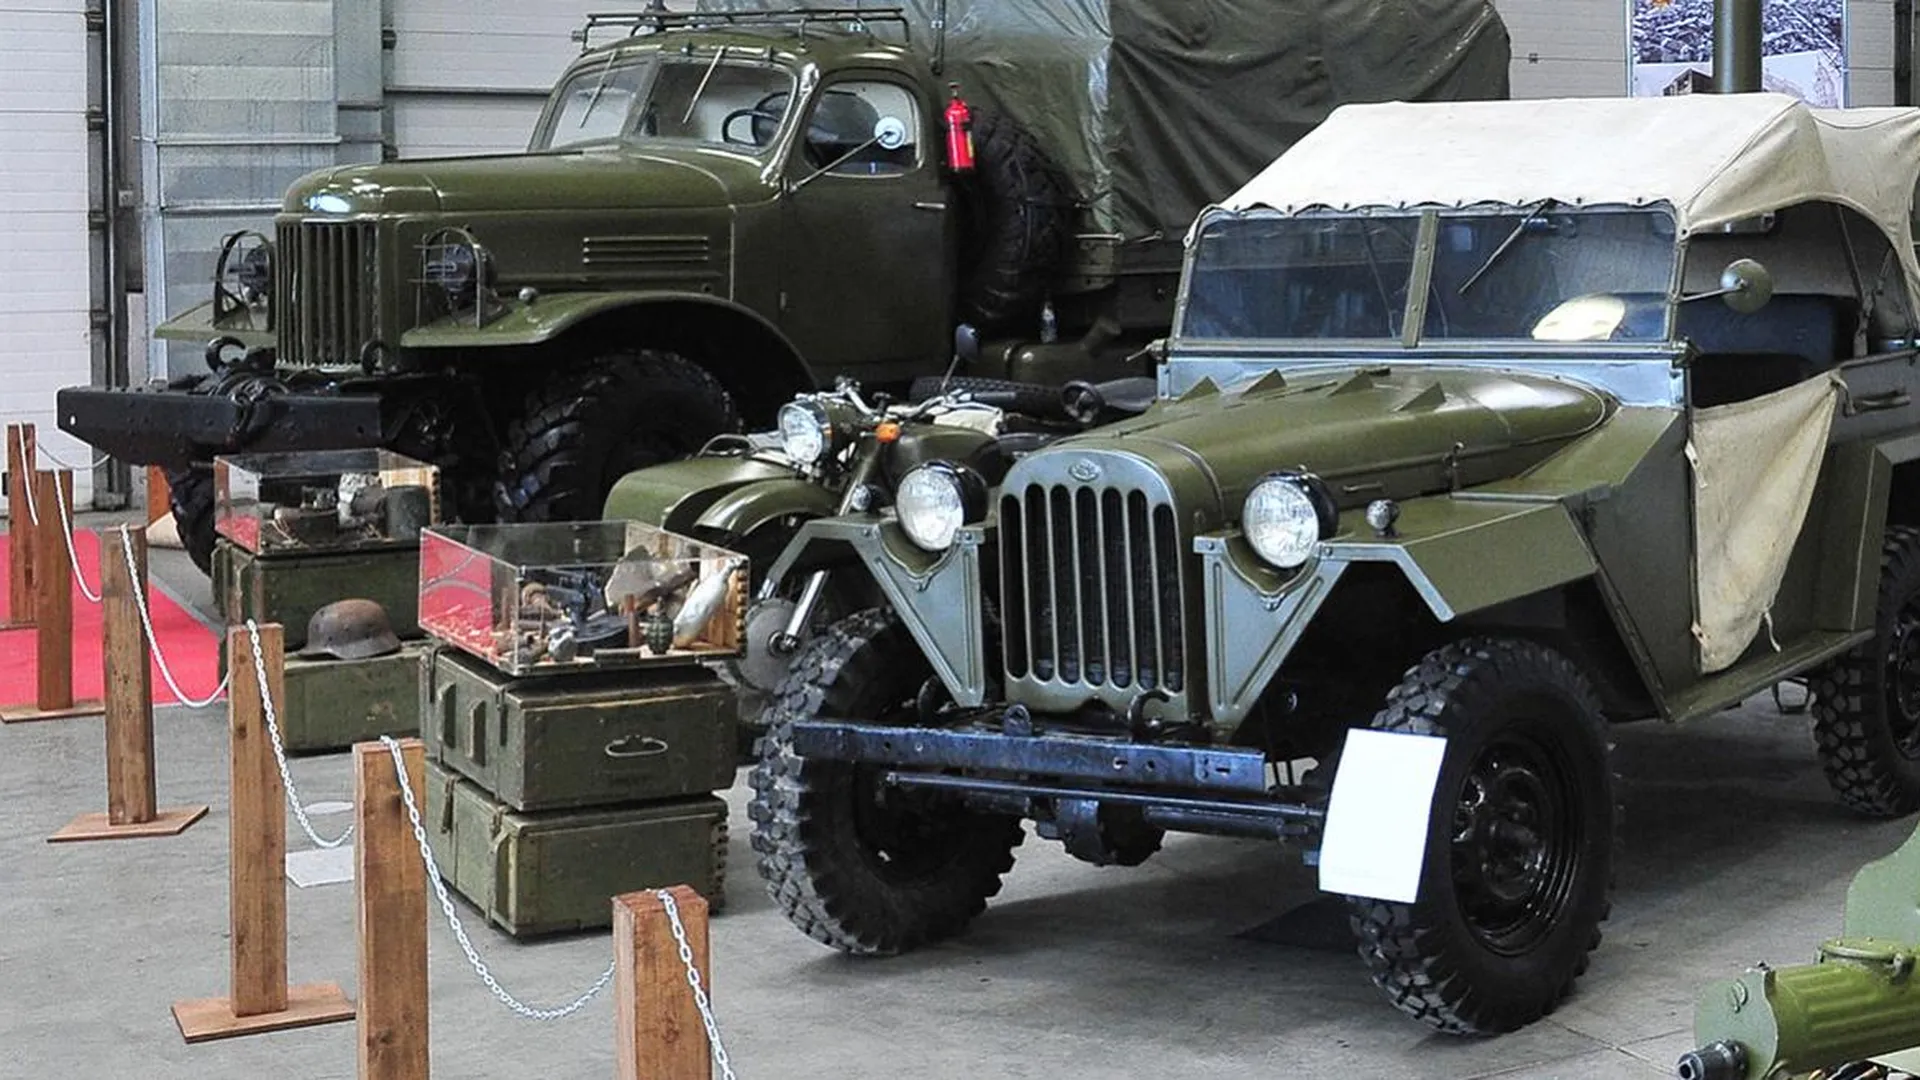 Выставка военной техники откроется в музее «Московский транспорт» в пятницу  | РИАМО